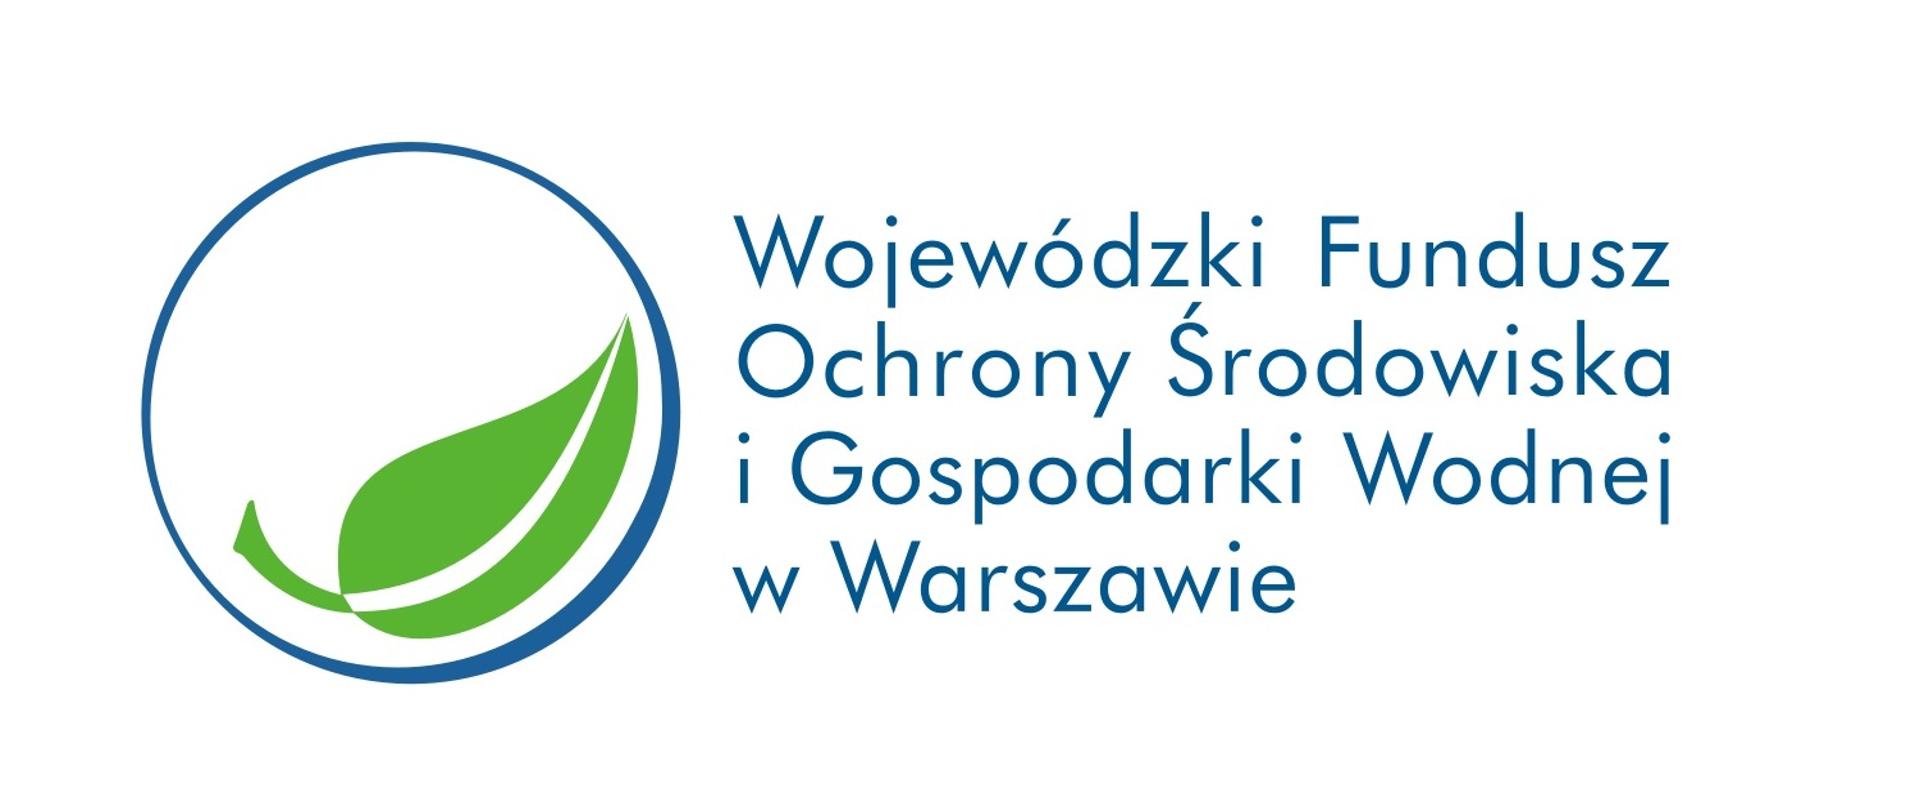 Zdjęcie z lewej strony przedstawia zielony liść wpisany w granatowe koło. Obok znajduje się napis Wojewódzki Fundusz Ochrony Środowiska i Gospodarki Wodnej w Warszawie. 